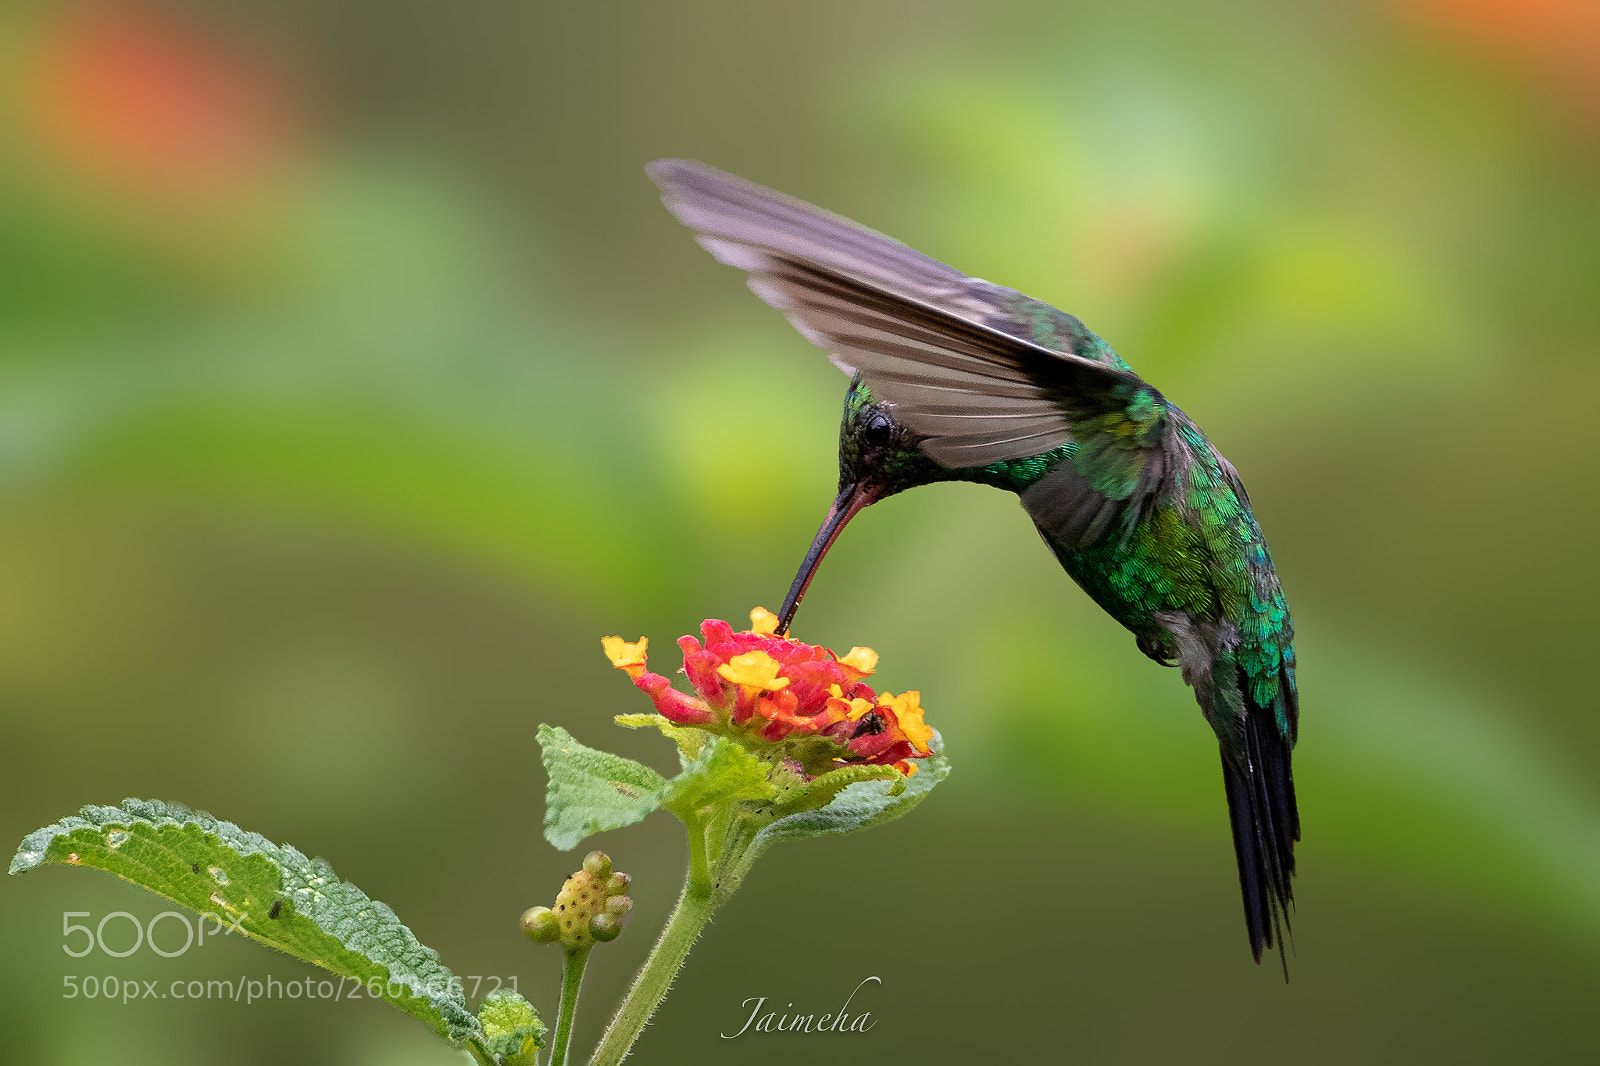 Canon EOS 5D Mark IV sample photo. Garden emerald hummingbird photography